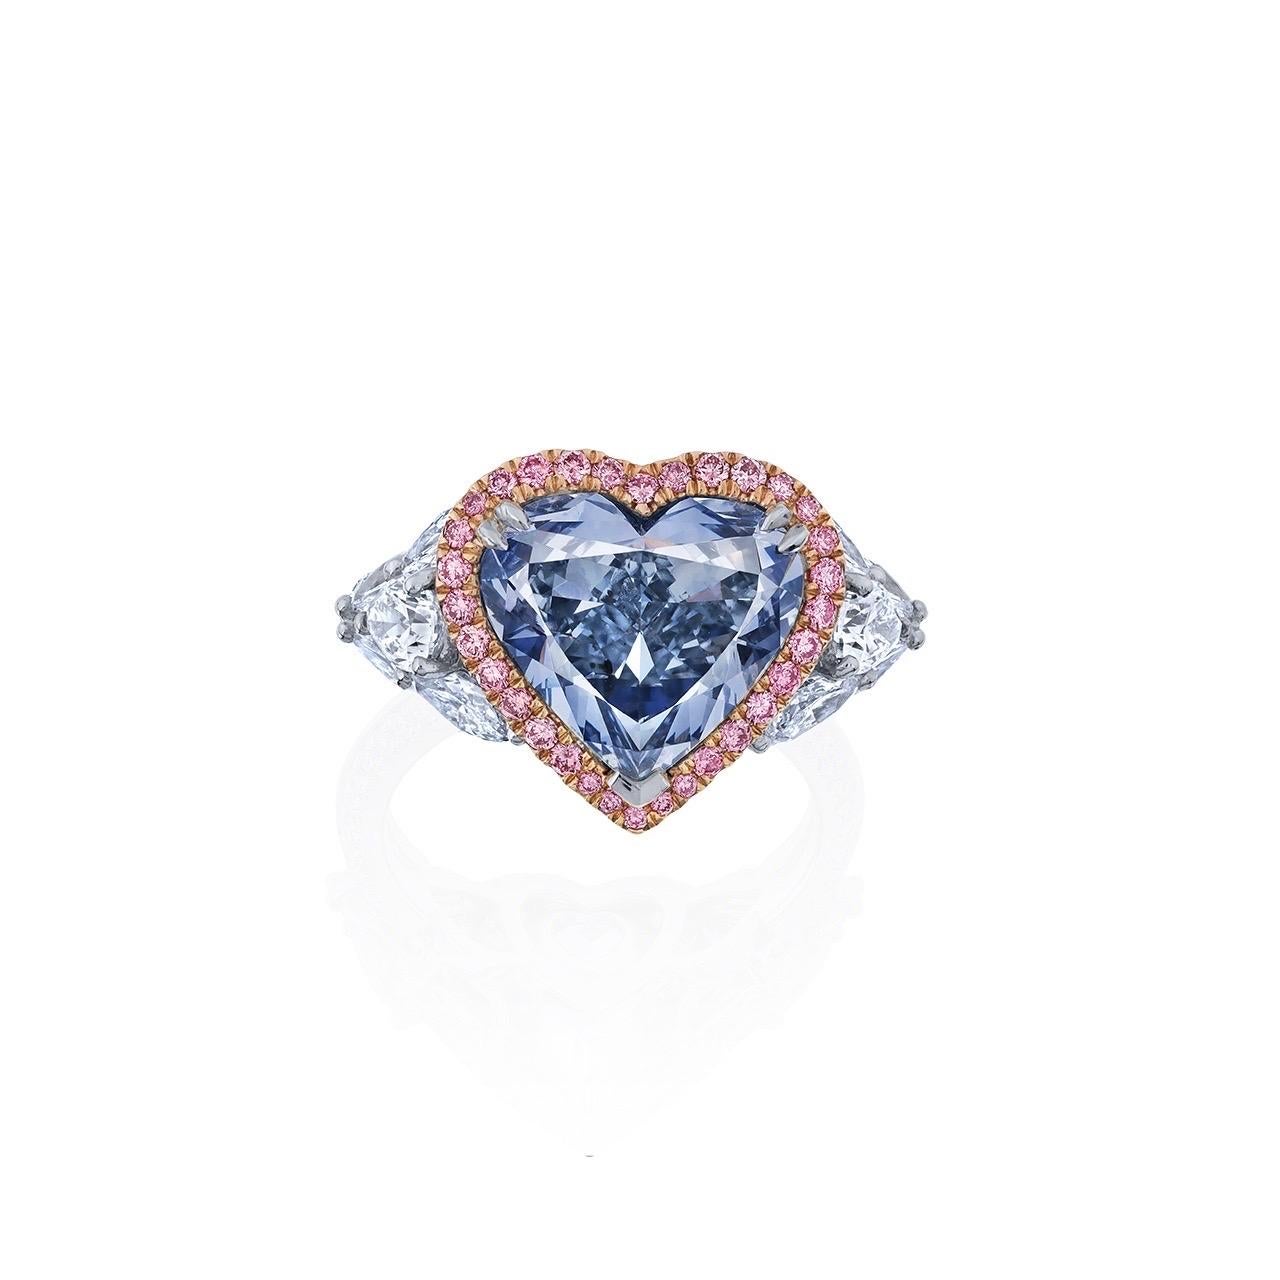 Heart Cut Emilio Jewelry Gia Certified Fancy Blue Heart Diamond Ring  For Sale